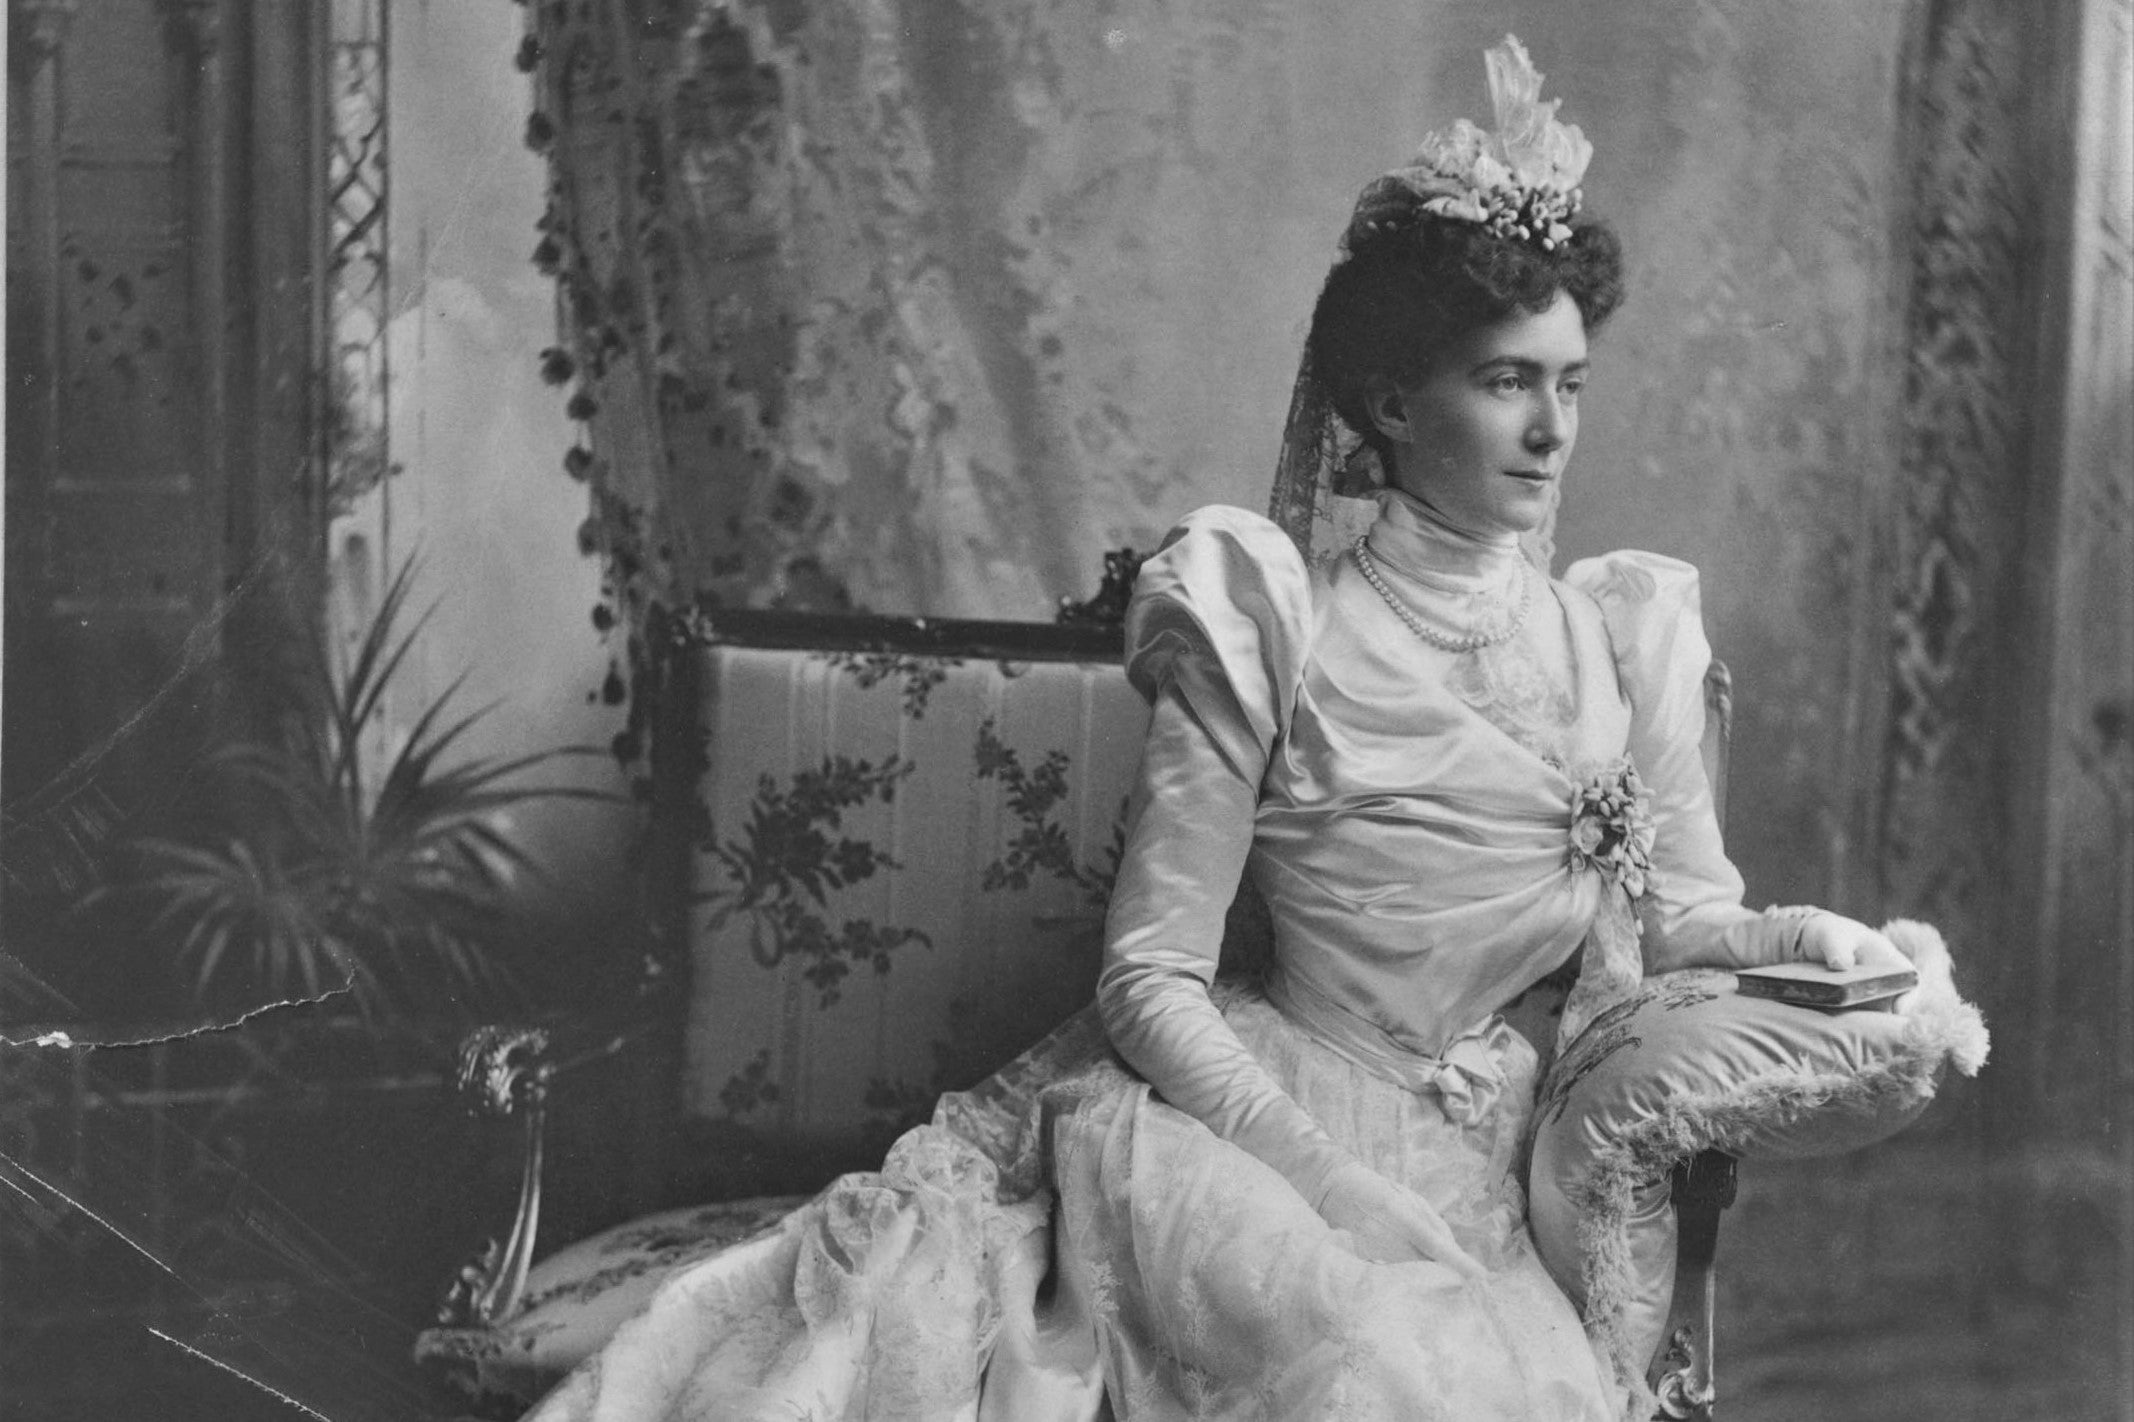 Natalie Bayard Dresser Brown in her wedding gown, ca. 1897 (cropped)